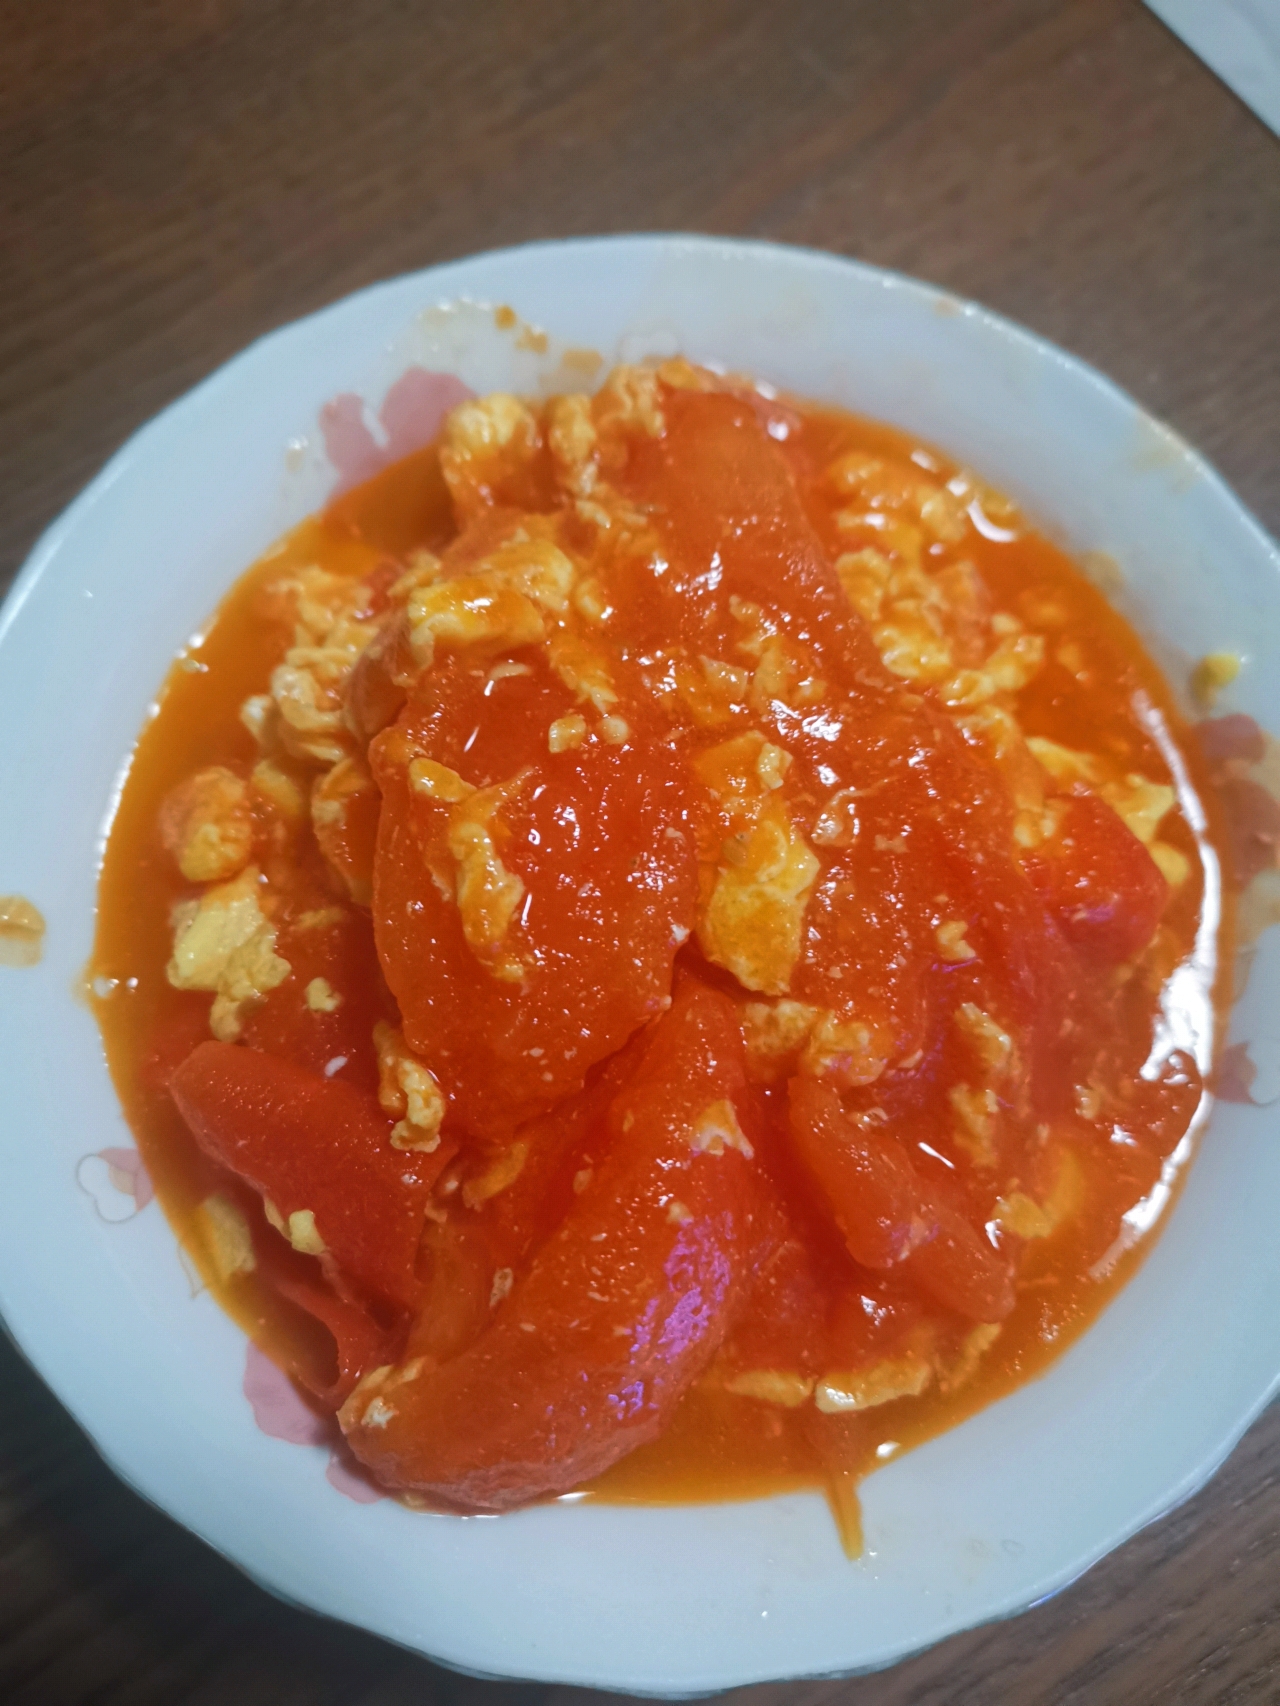 ㊙️一人食|饭店风味番茄炒蛋做法揭秘